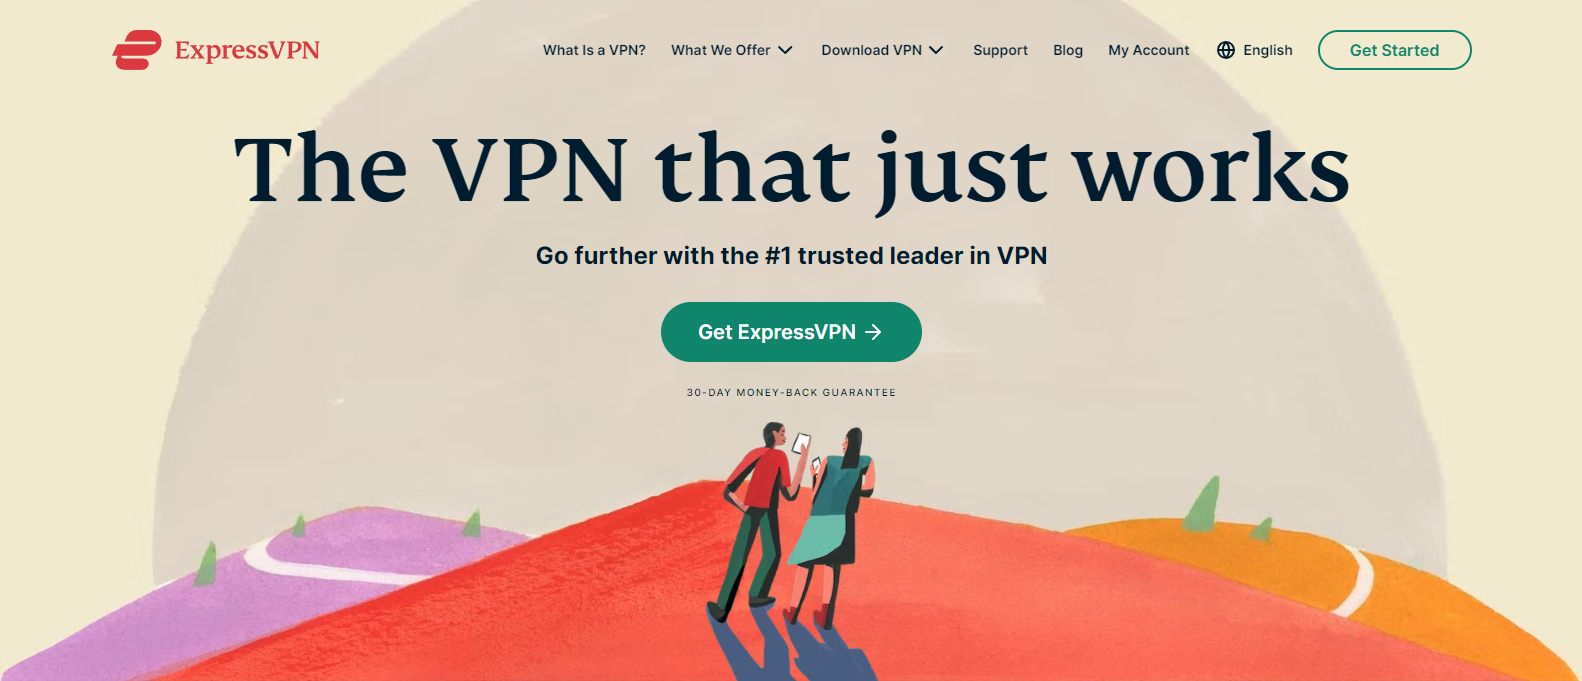 Express VPN Landing Page